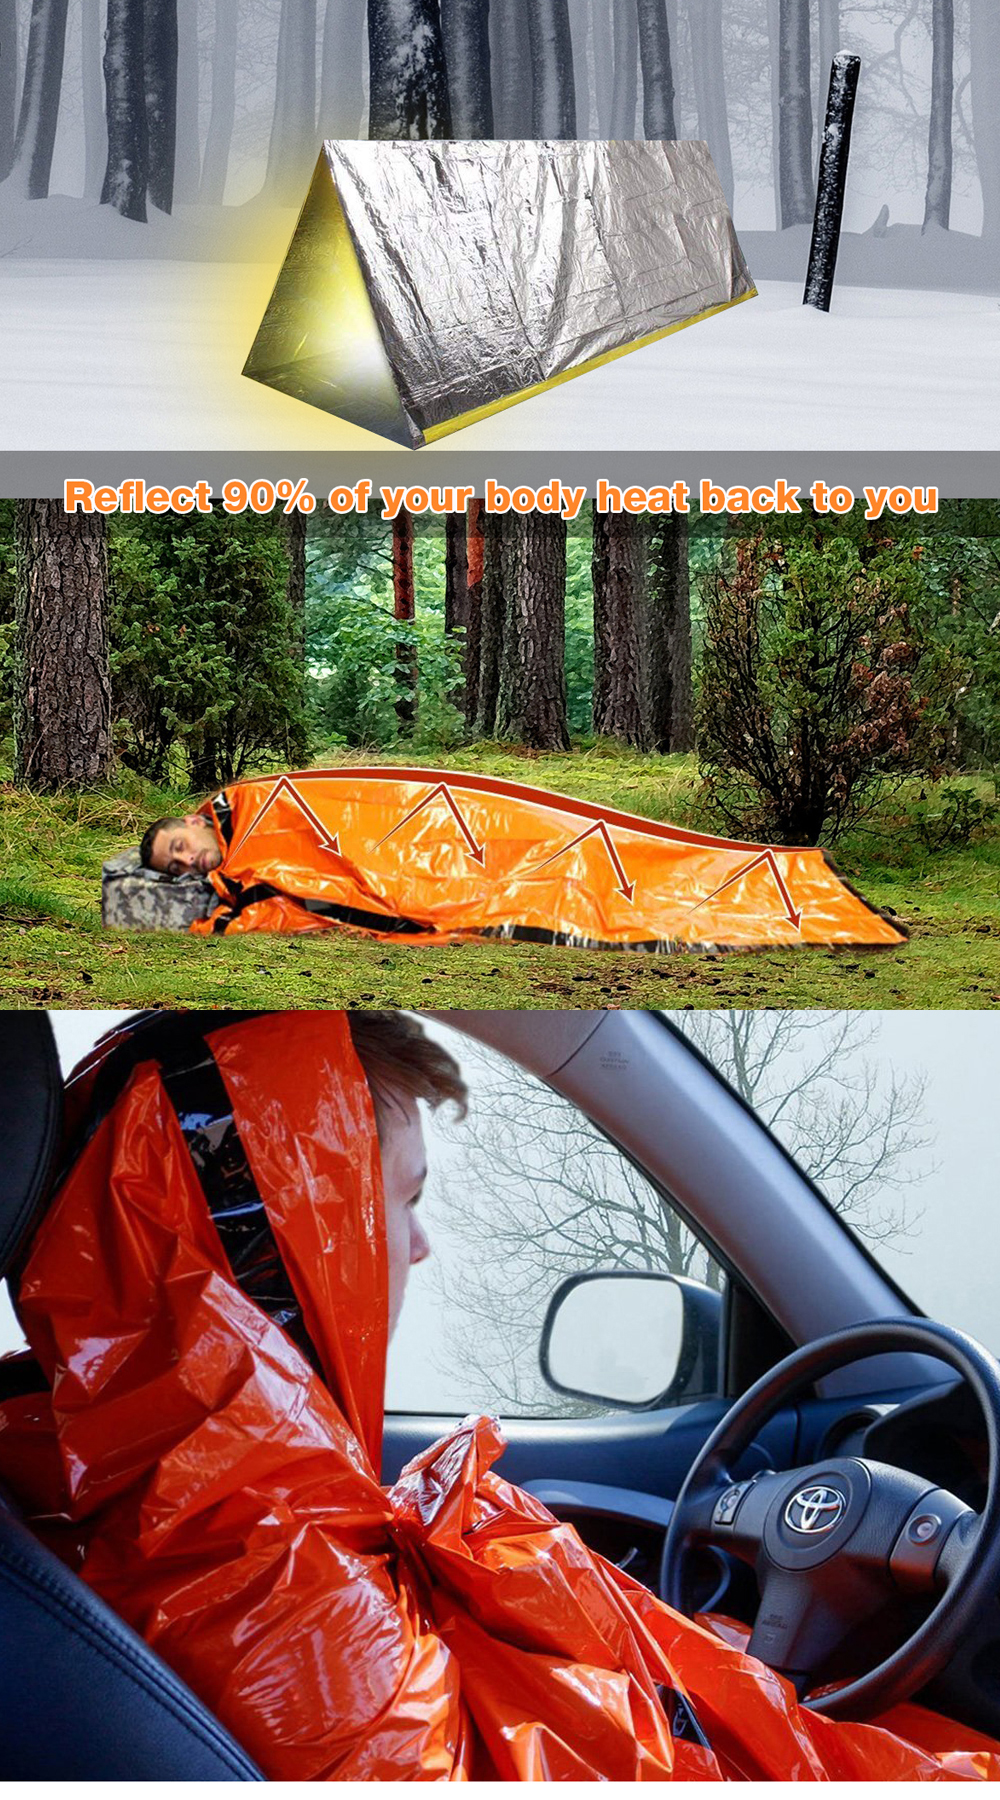 PE-Aluminum-Film-Sleeping-Bag-1-People-Outdoor-Camping-Waterproof-Sleeping-Pad-Portable-Folding-Slee-1406960